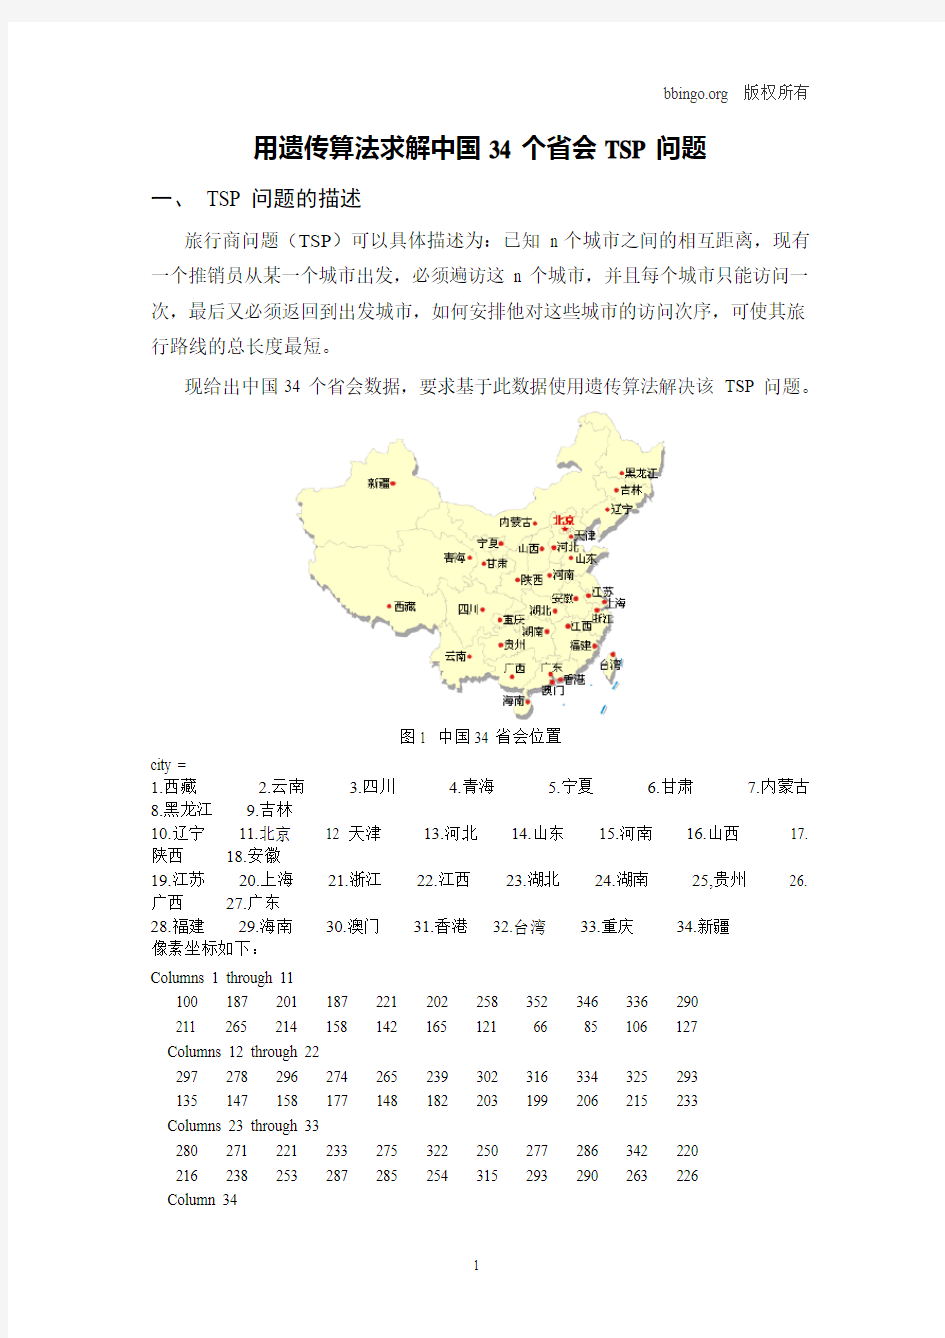 用遗传算法求解中国34个省会TSP的问题